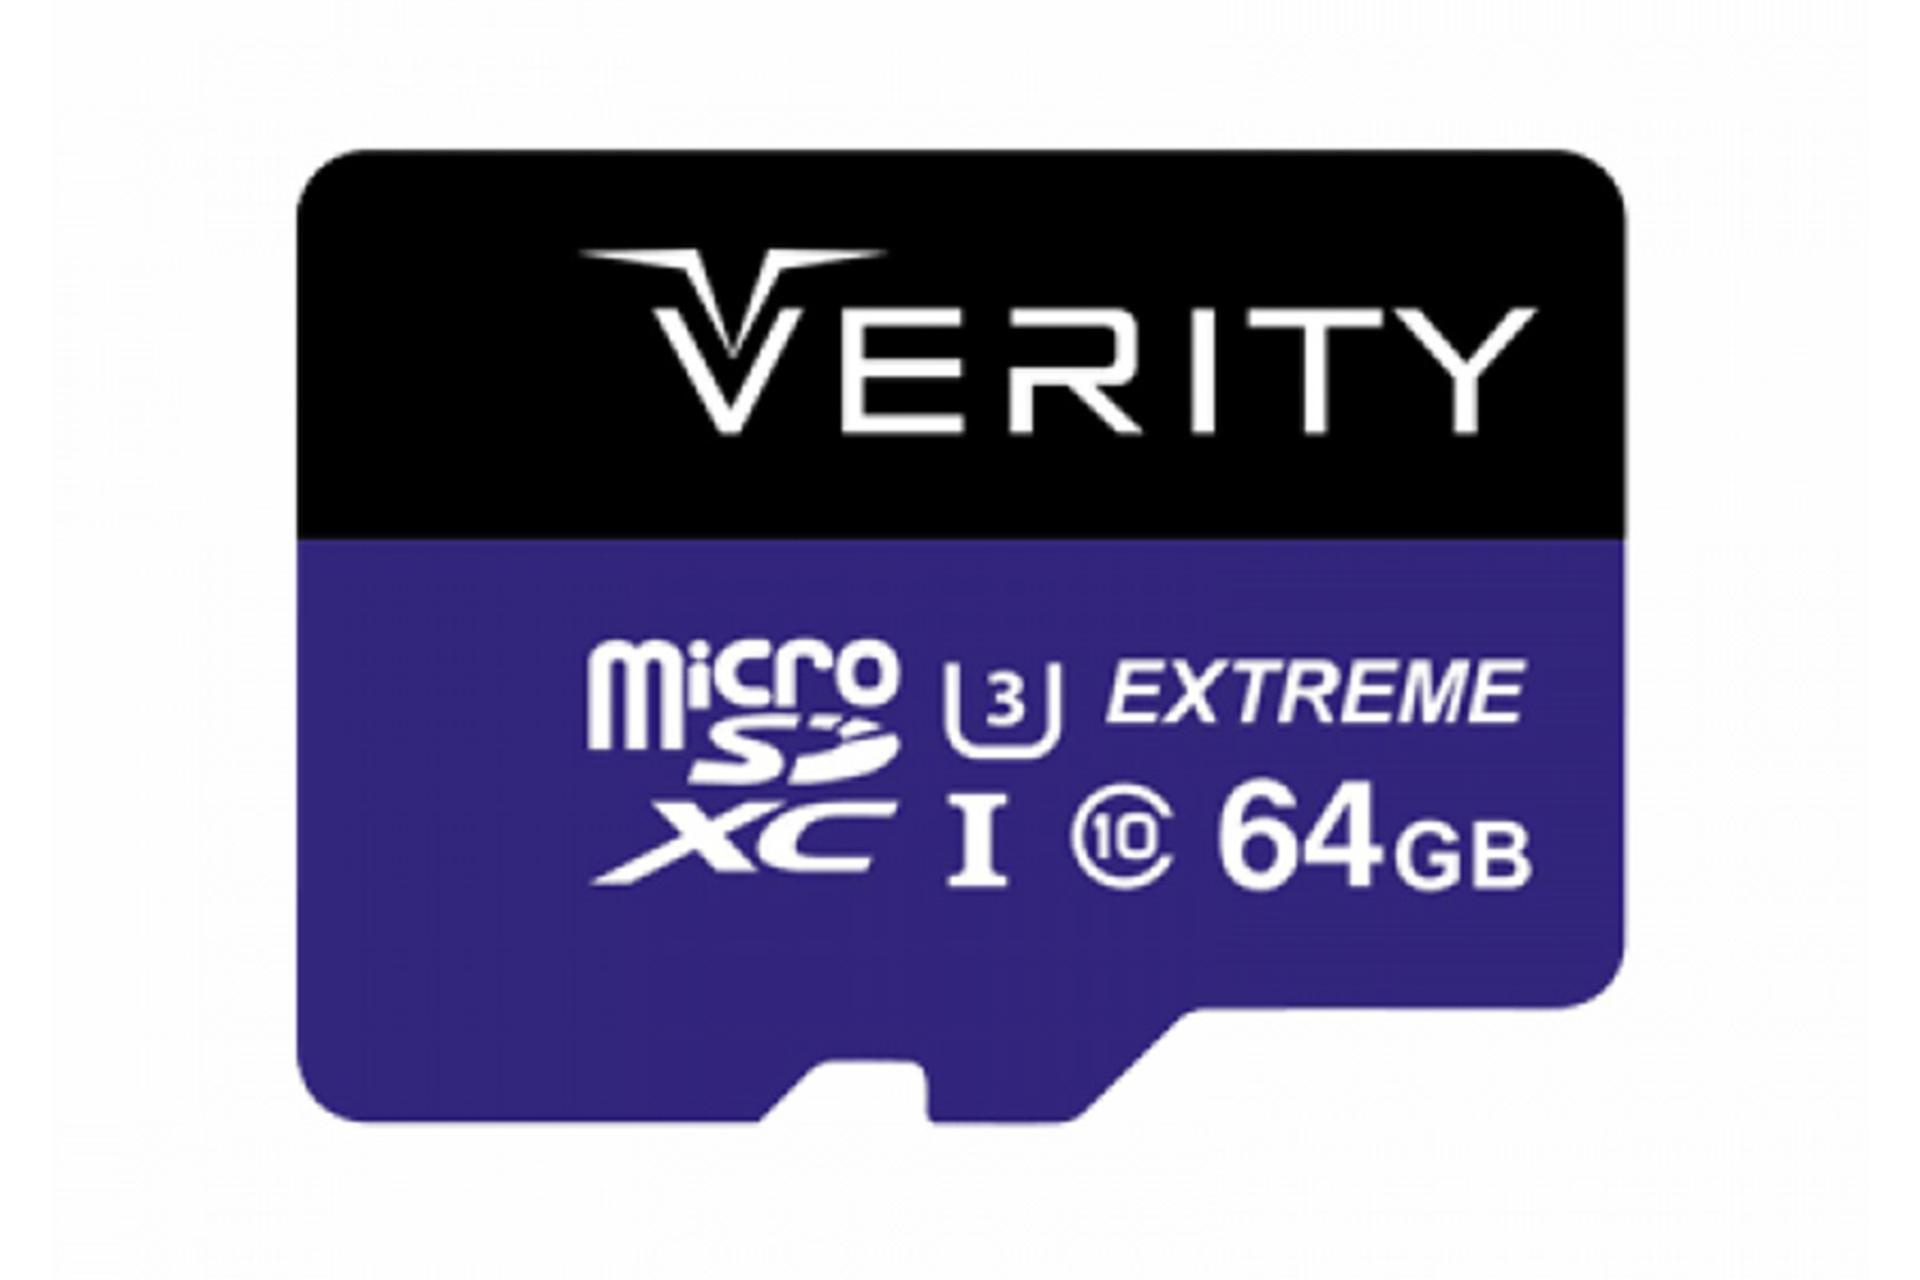 مرجع متخصصين ايران كارت حافظه وريتي Verity 533x microSDXC Class 10 UHS-I U3 64GB